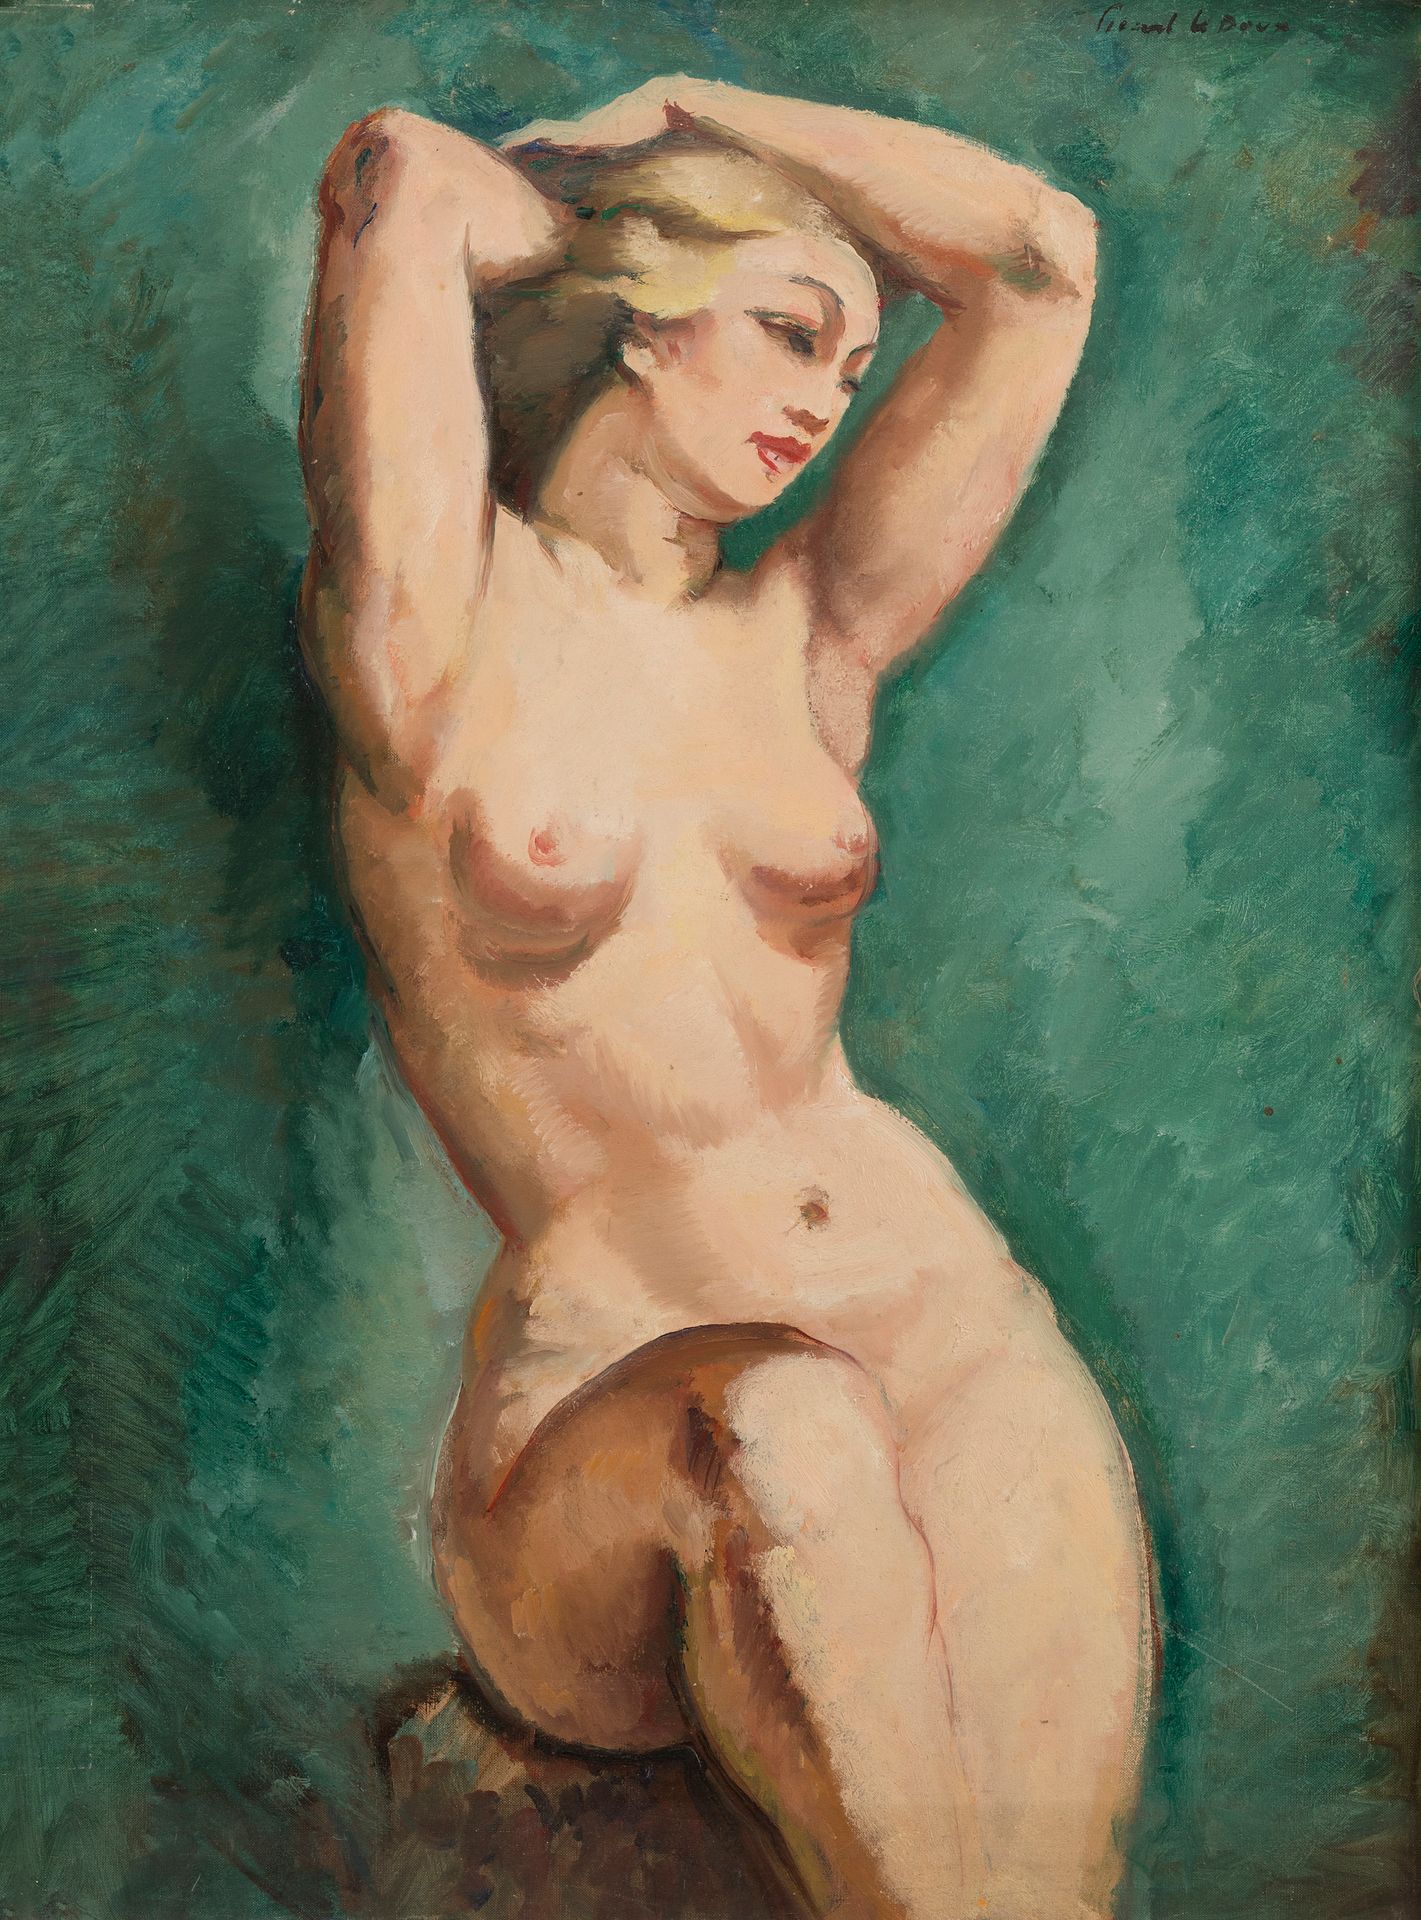 Null 查尔斯-皮卡特-勒杜(1881-1959)
手臂在空中的裸体
布面油画，右上角有签名
81 x 60 cm